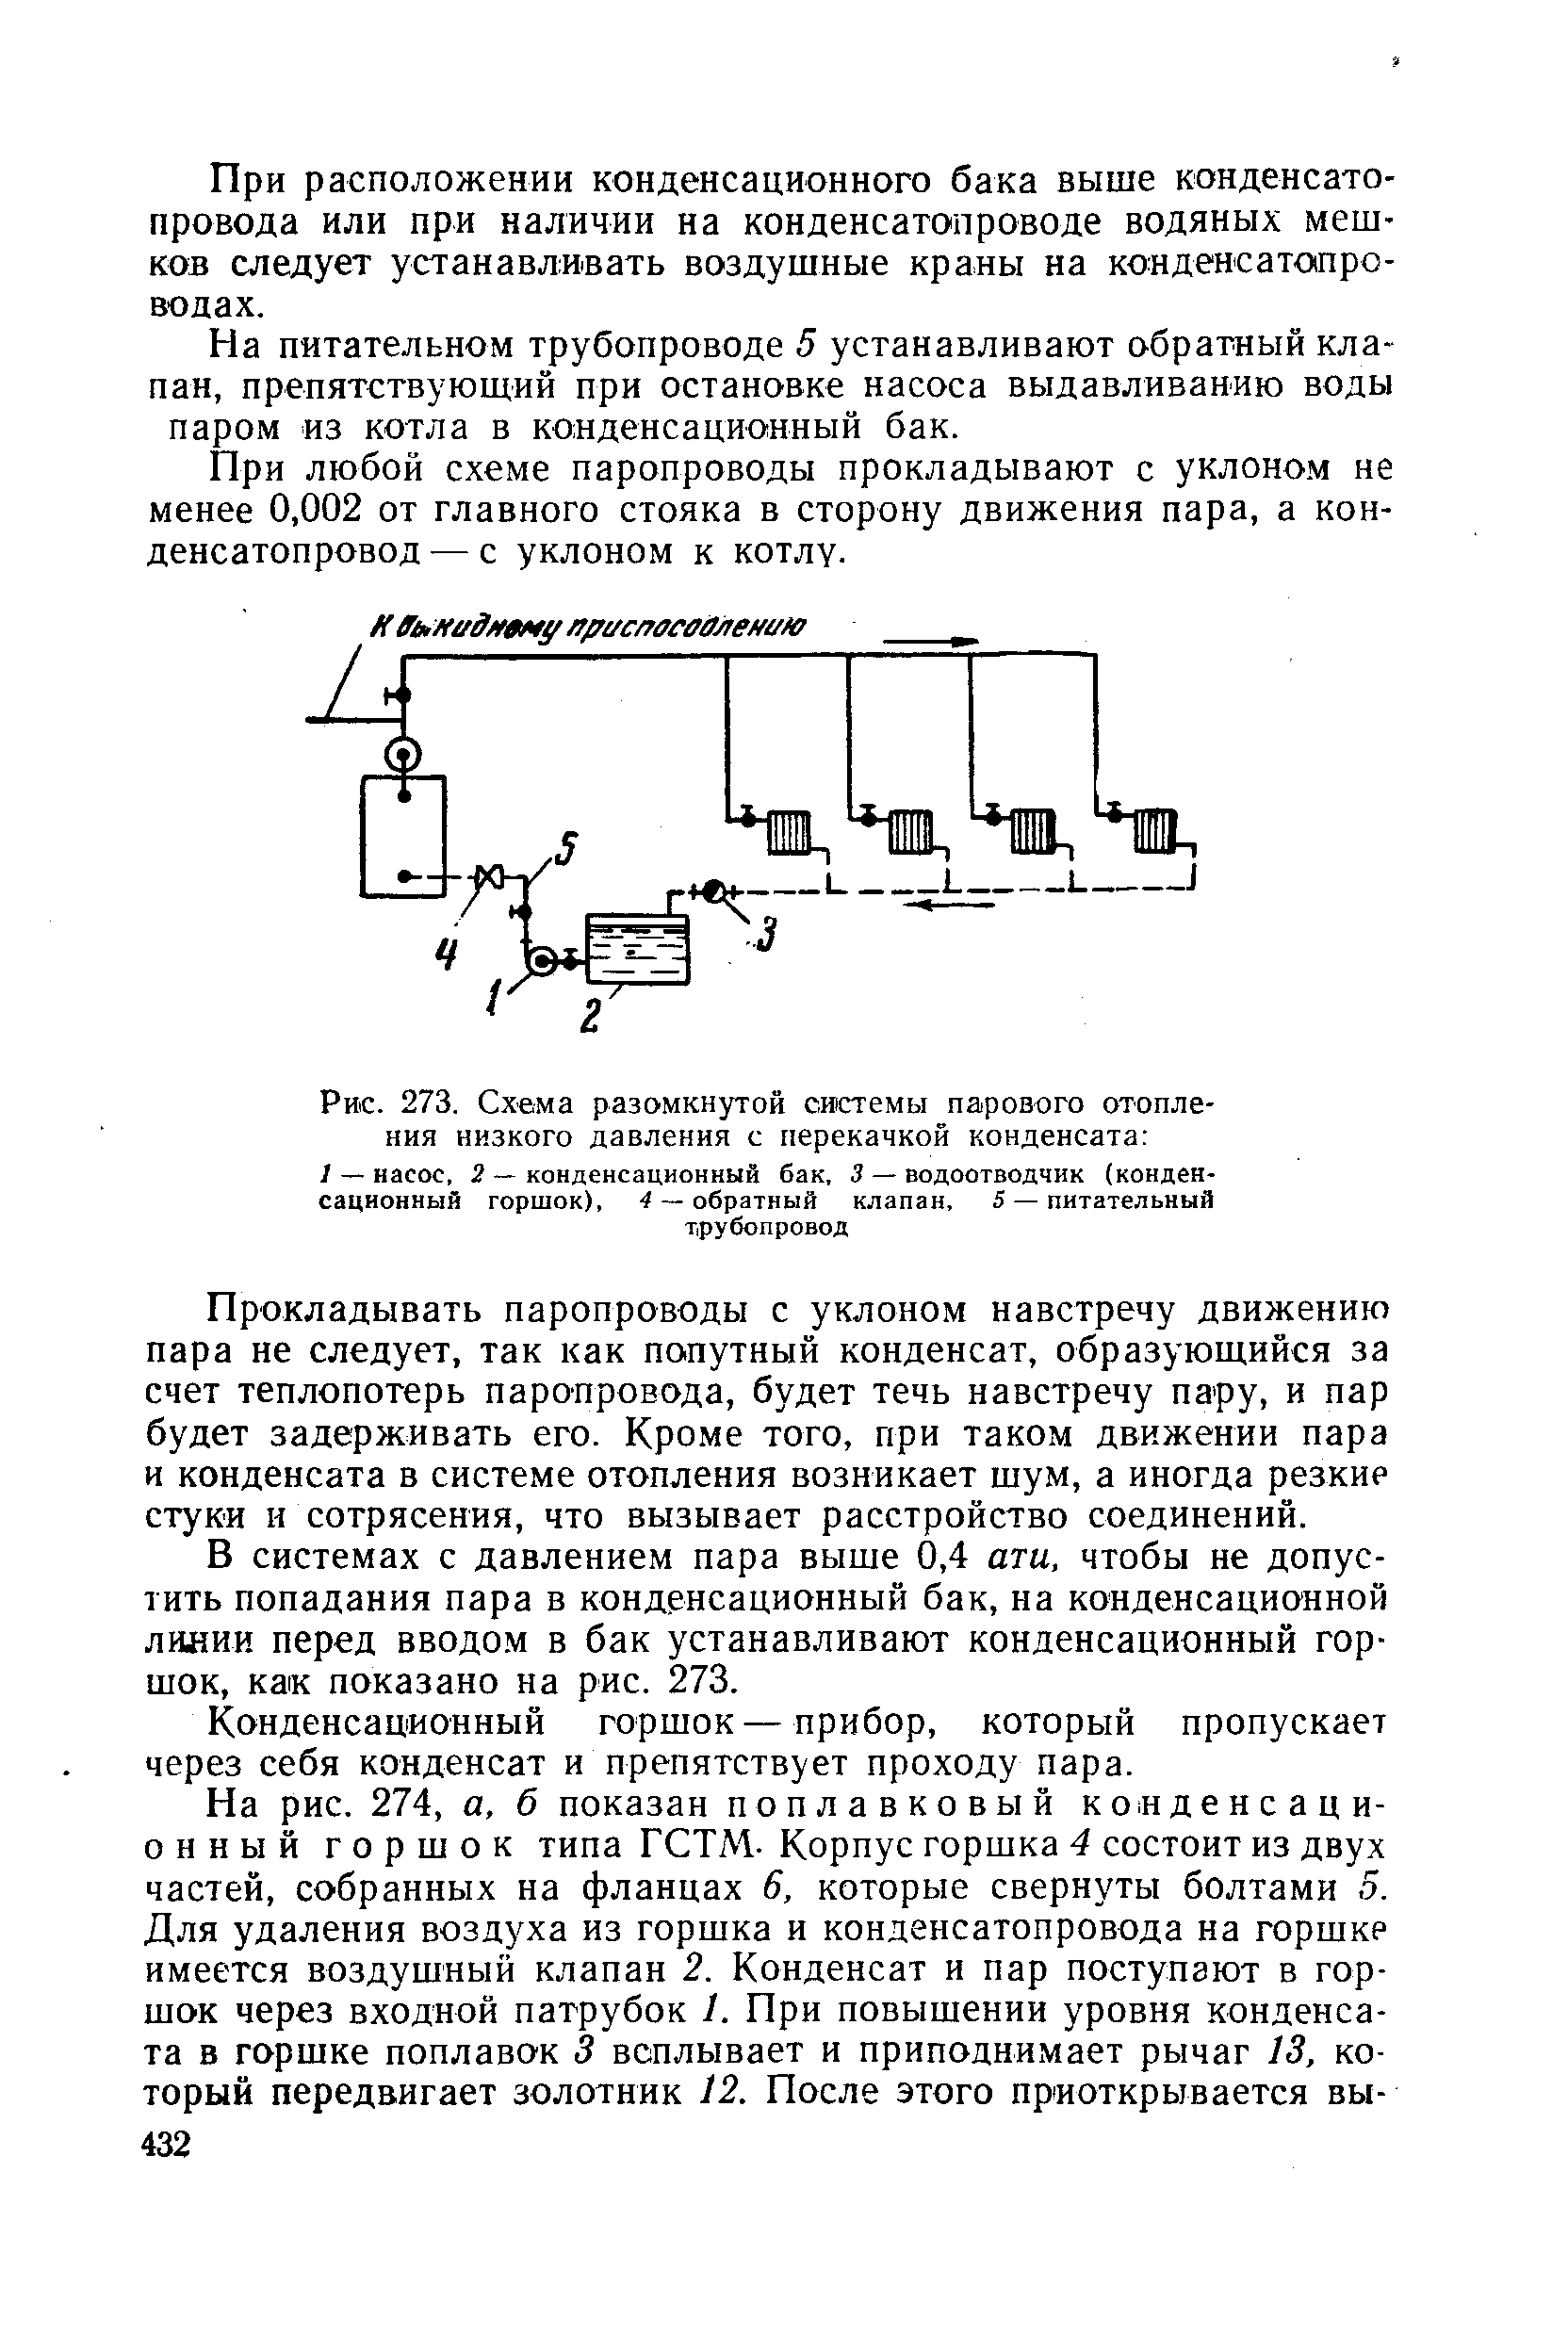 Рис. 273. Схема разомкнутой системы парового отопления низкого давления с перекачкой конденсата 
